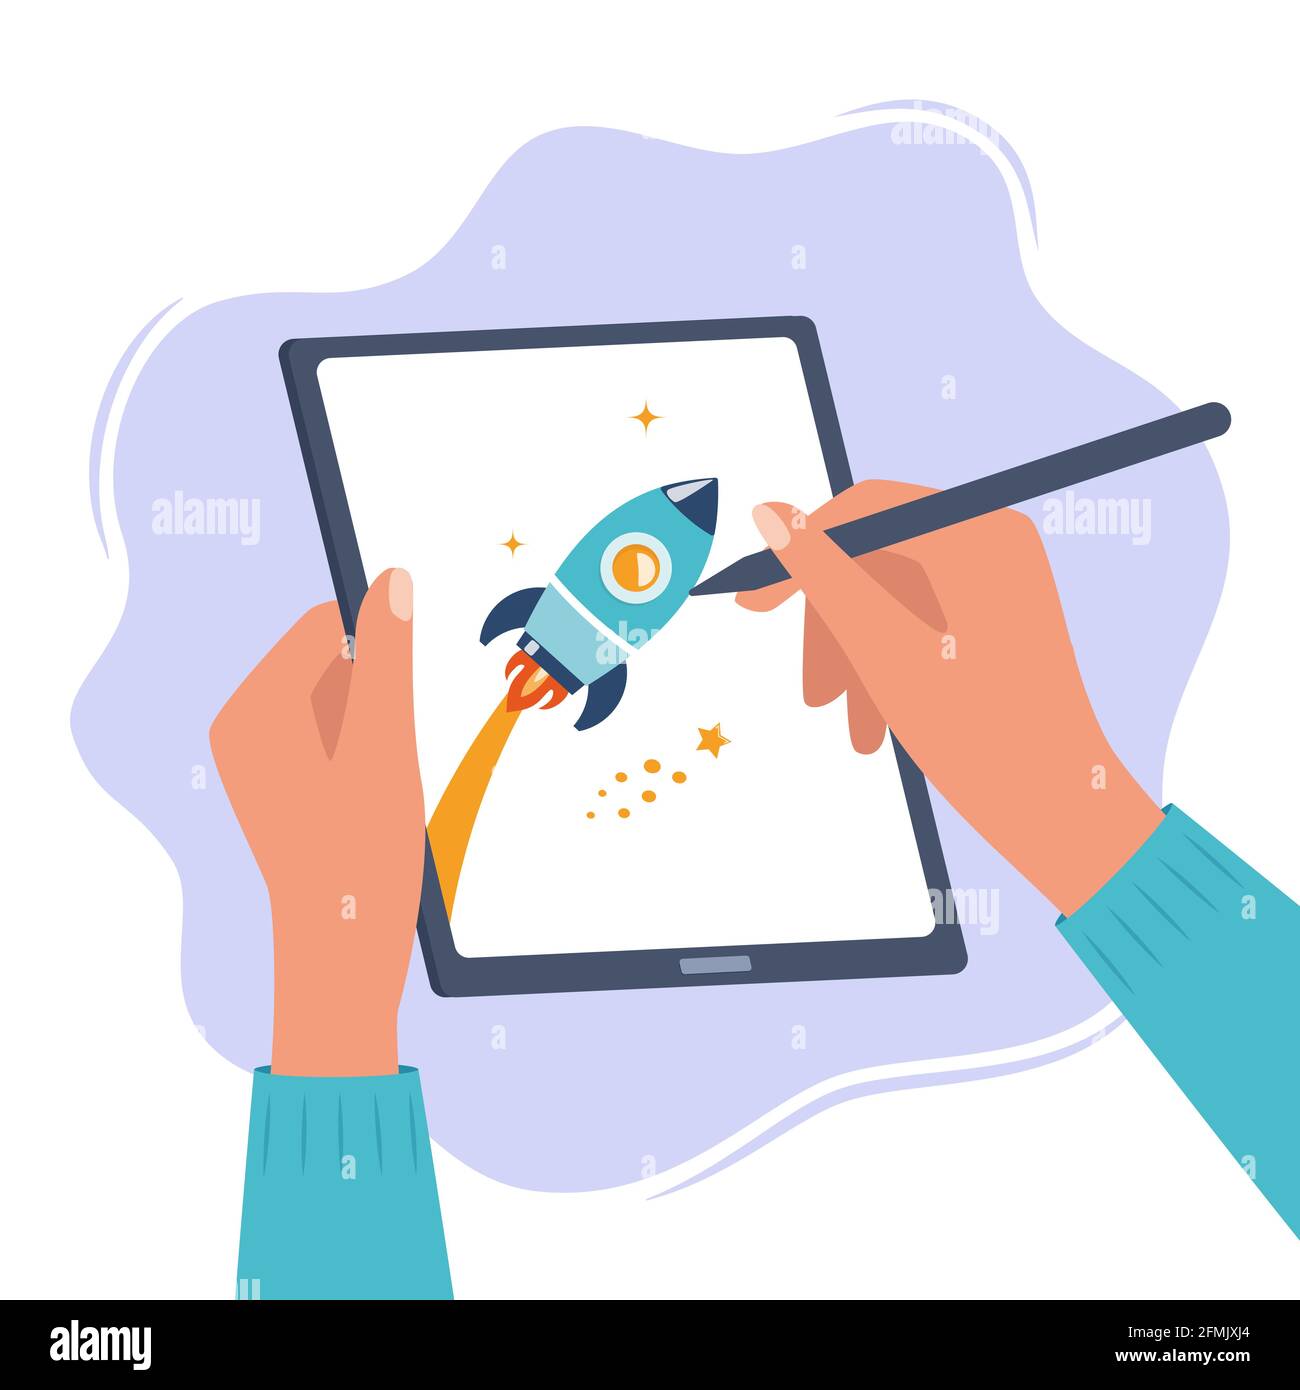 Designer Illustrator zeichnet eine niedliche Illustration auf Grafik-Tablet  mit Stift. Hände halten Tablet und Stylus Pen. Kunst schaffen,  Grafik-Design, digital Stock-Vektorgrafik - Alamy